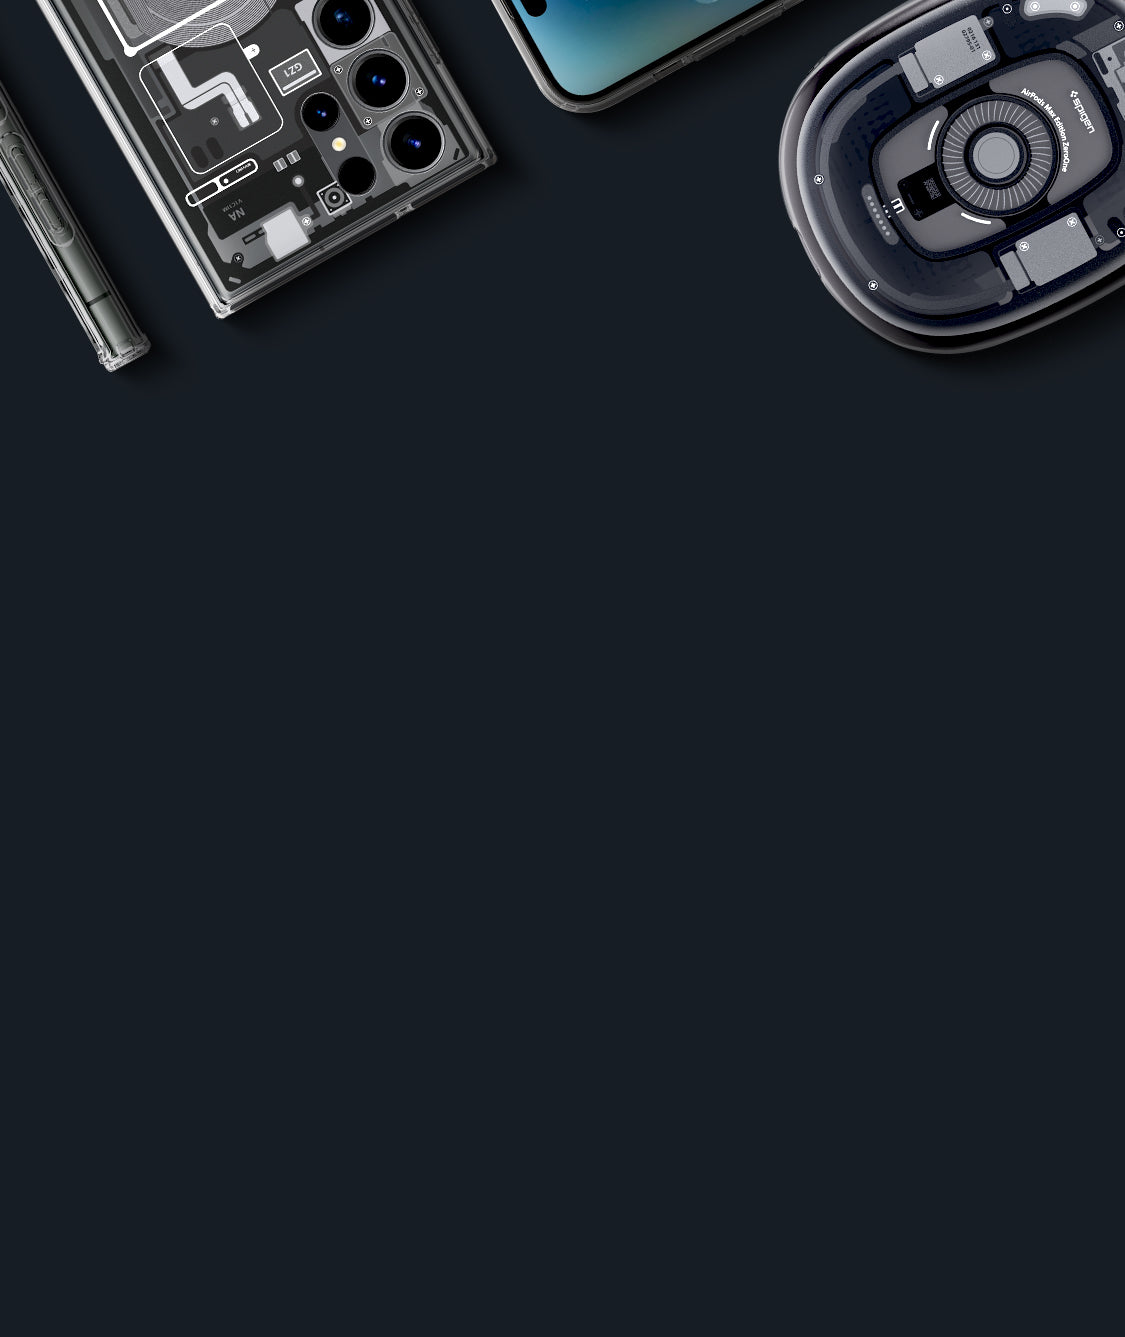 Spigen Zero One Technology Appearance Earphone Case Suitable For Airpods 3  Suitable For Airpods Pro 2 Generation 1/2 and Pro